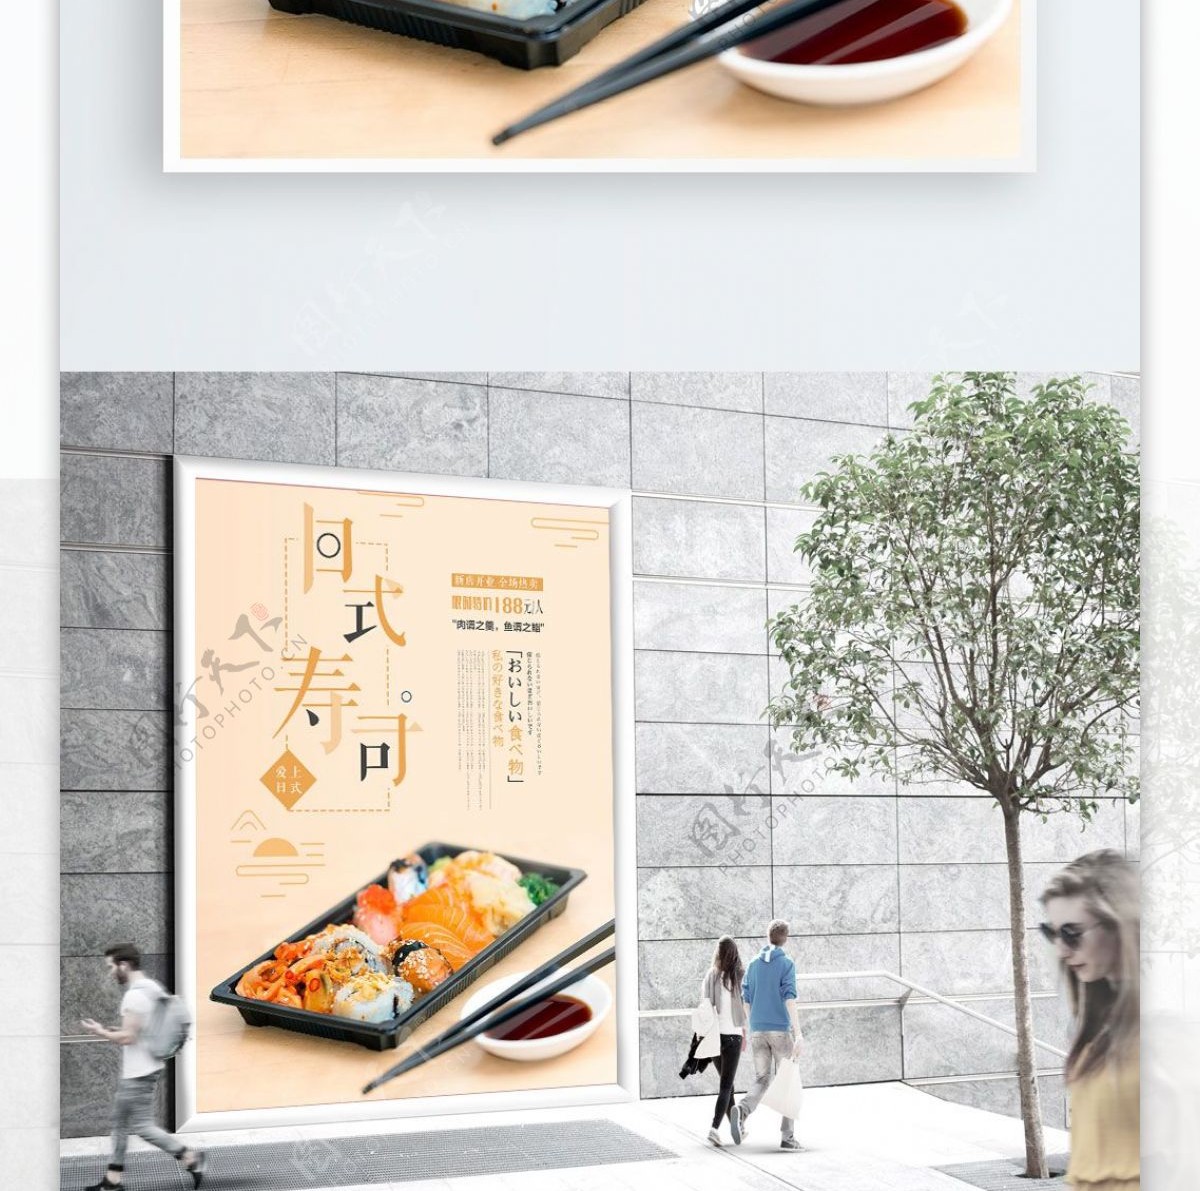 日系风日本寿司美食促销海报设计